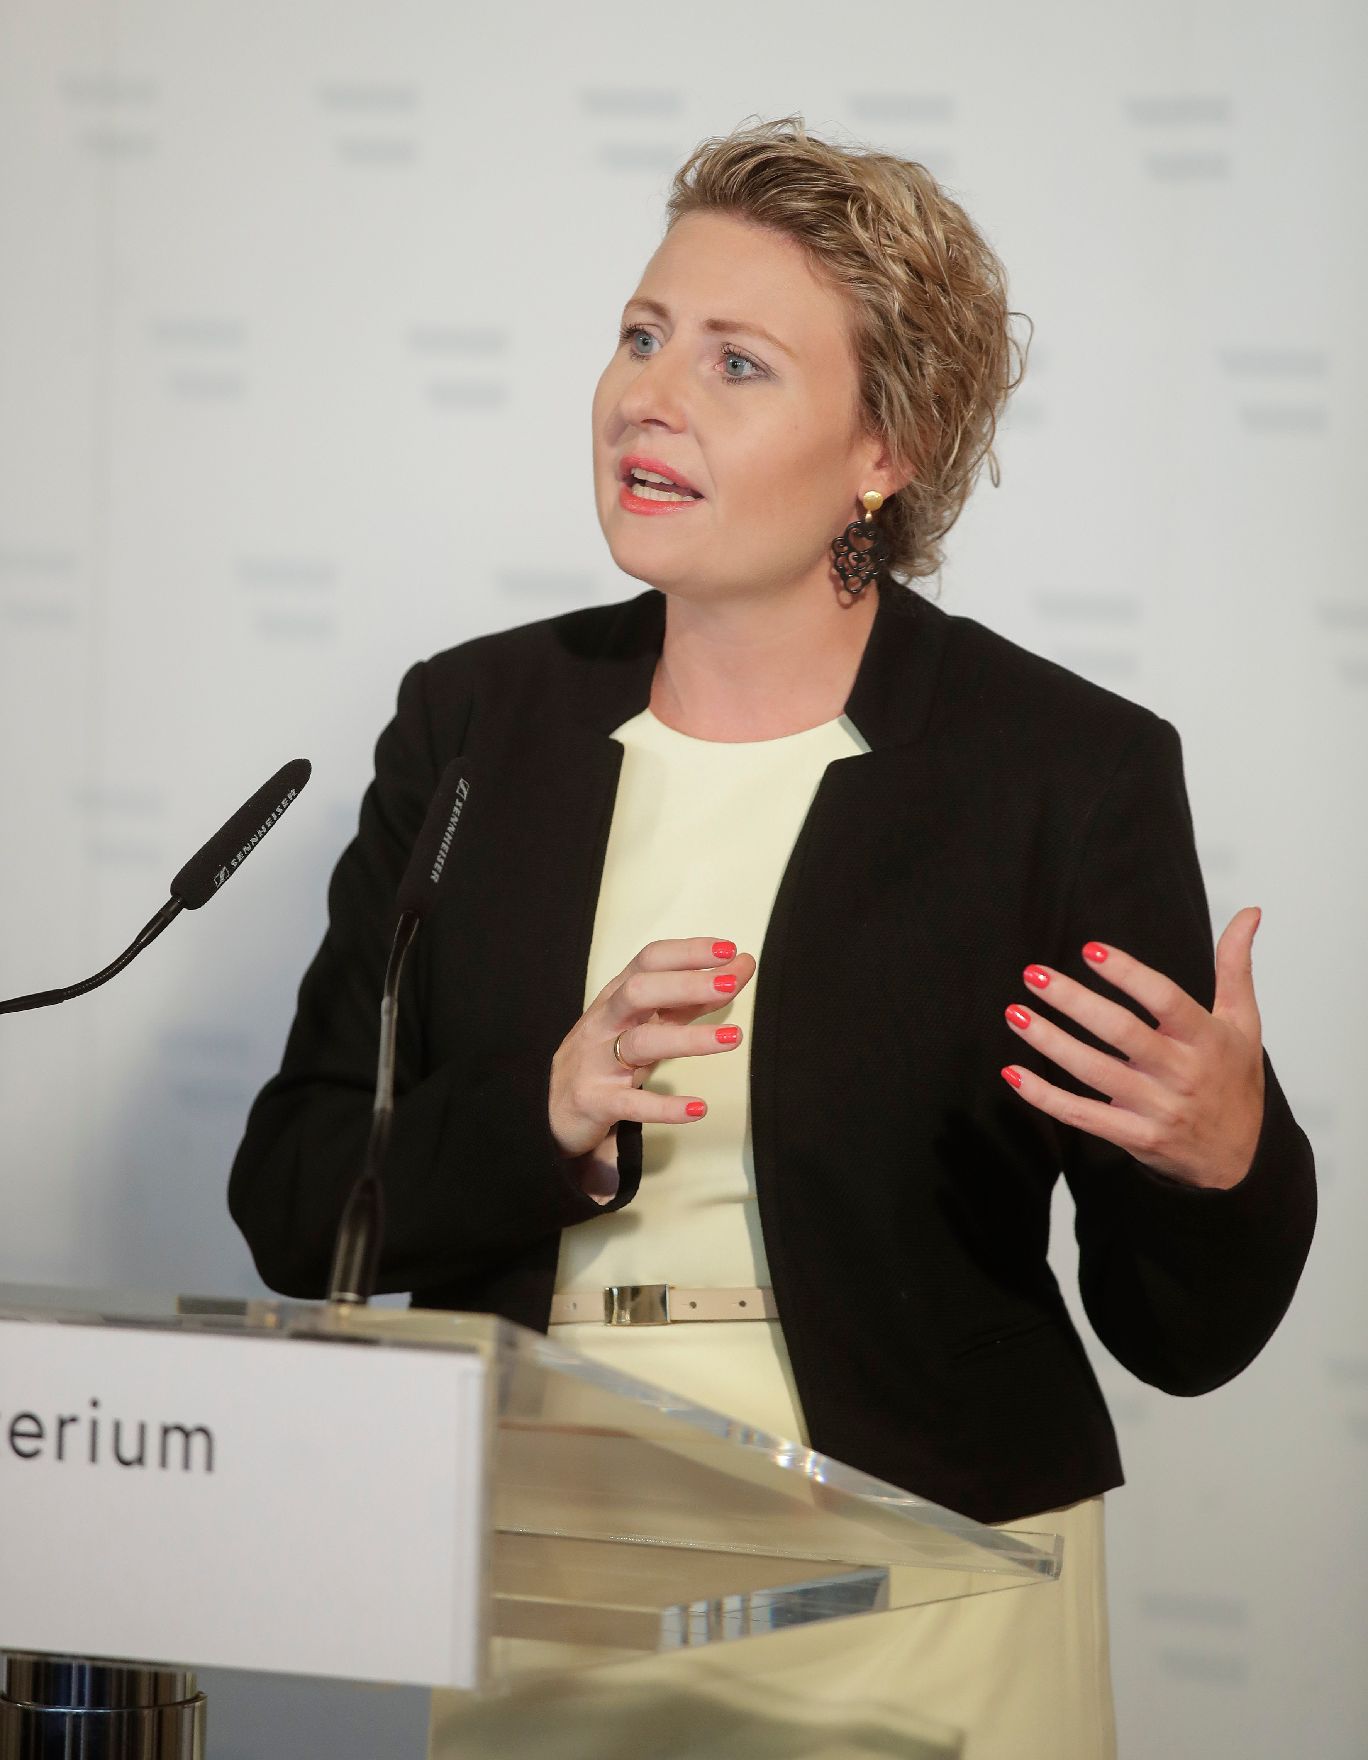 Am 8. Juli 2020 gaben Bundesministerin Susanne Raab (im Bild) und Bundesminister Karl Nehammer eine Pressekonferenz zum Thema "Radikalisierung".